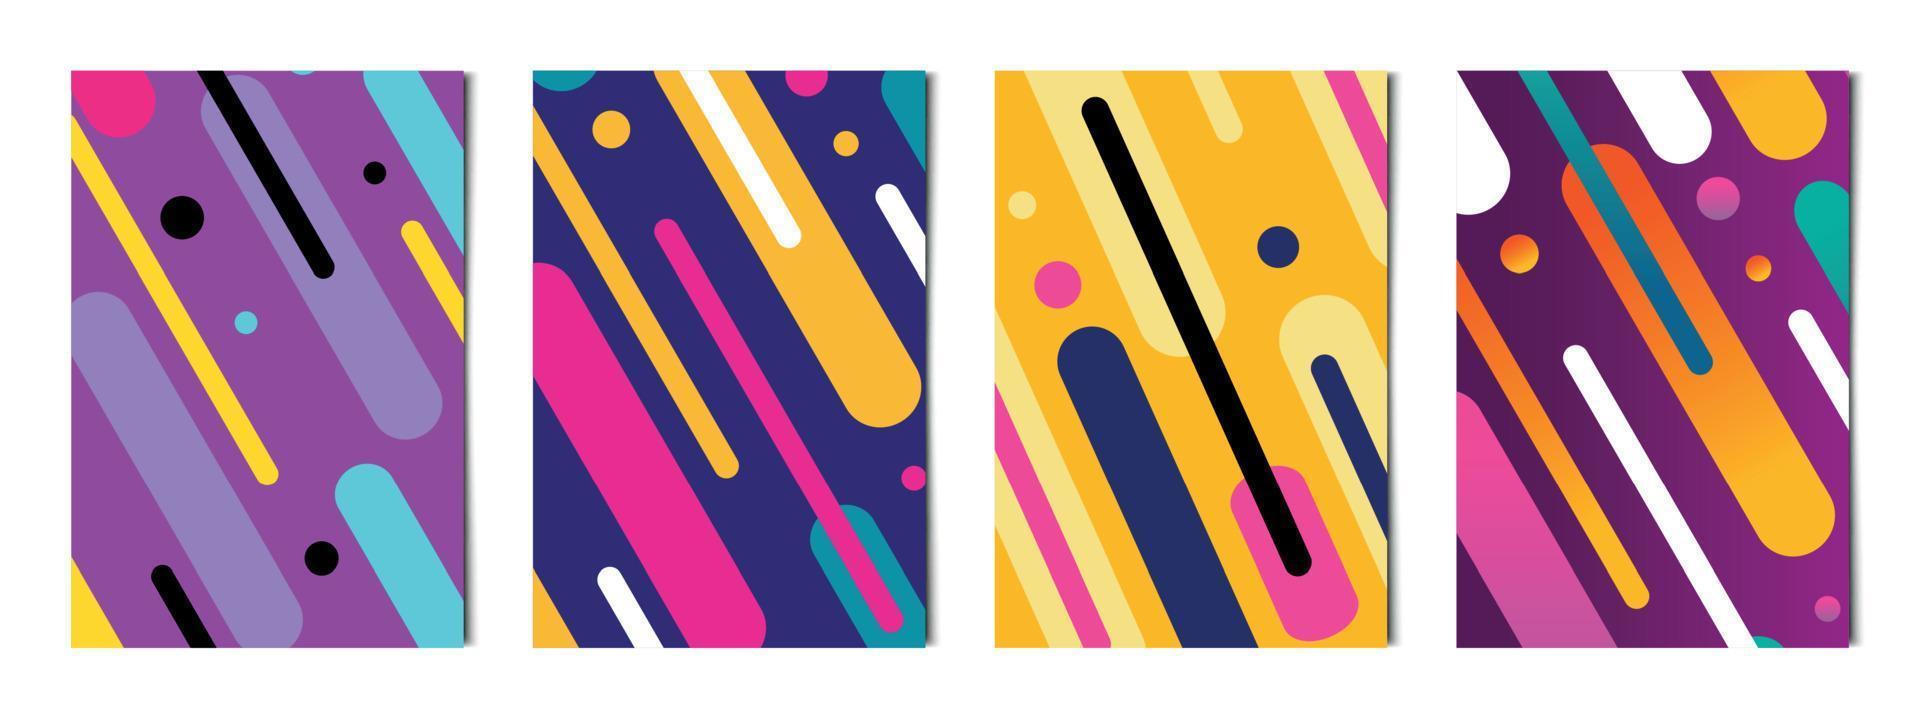 conjunto de 4 piezas de fondos de formas de líneas coloridas abstractas, plantillas para publicidad, tarjetas de visita, texturas - vector